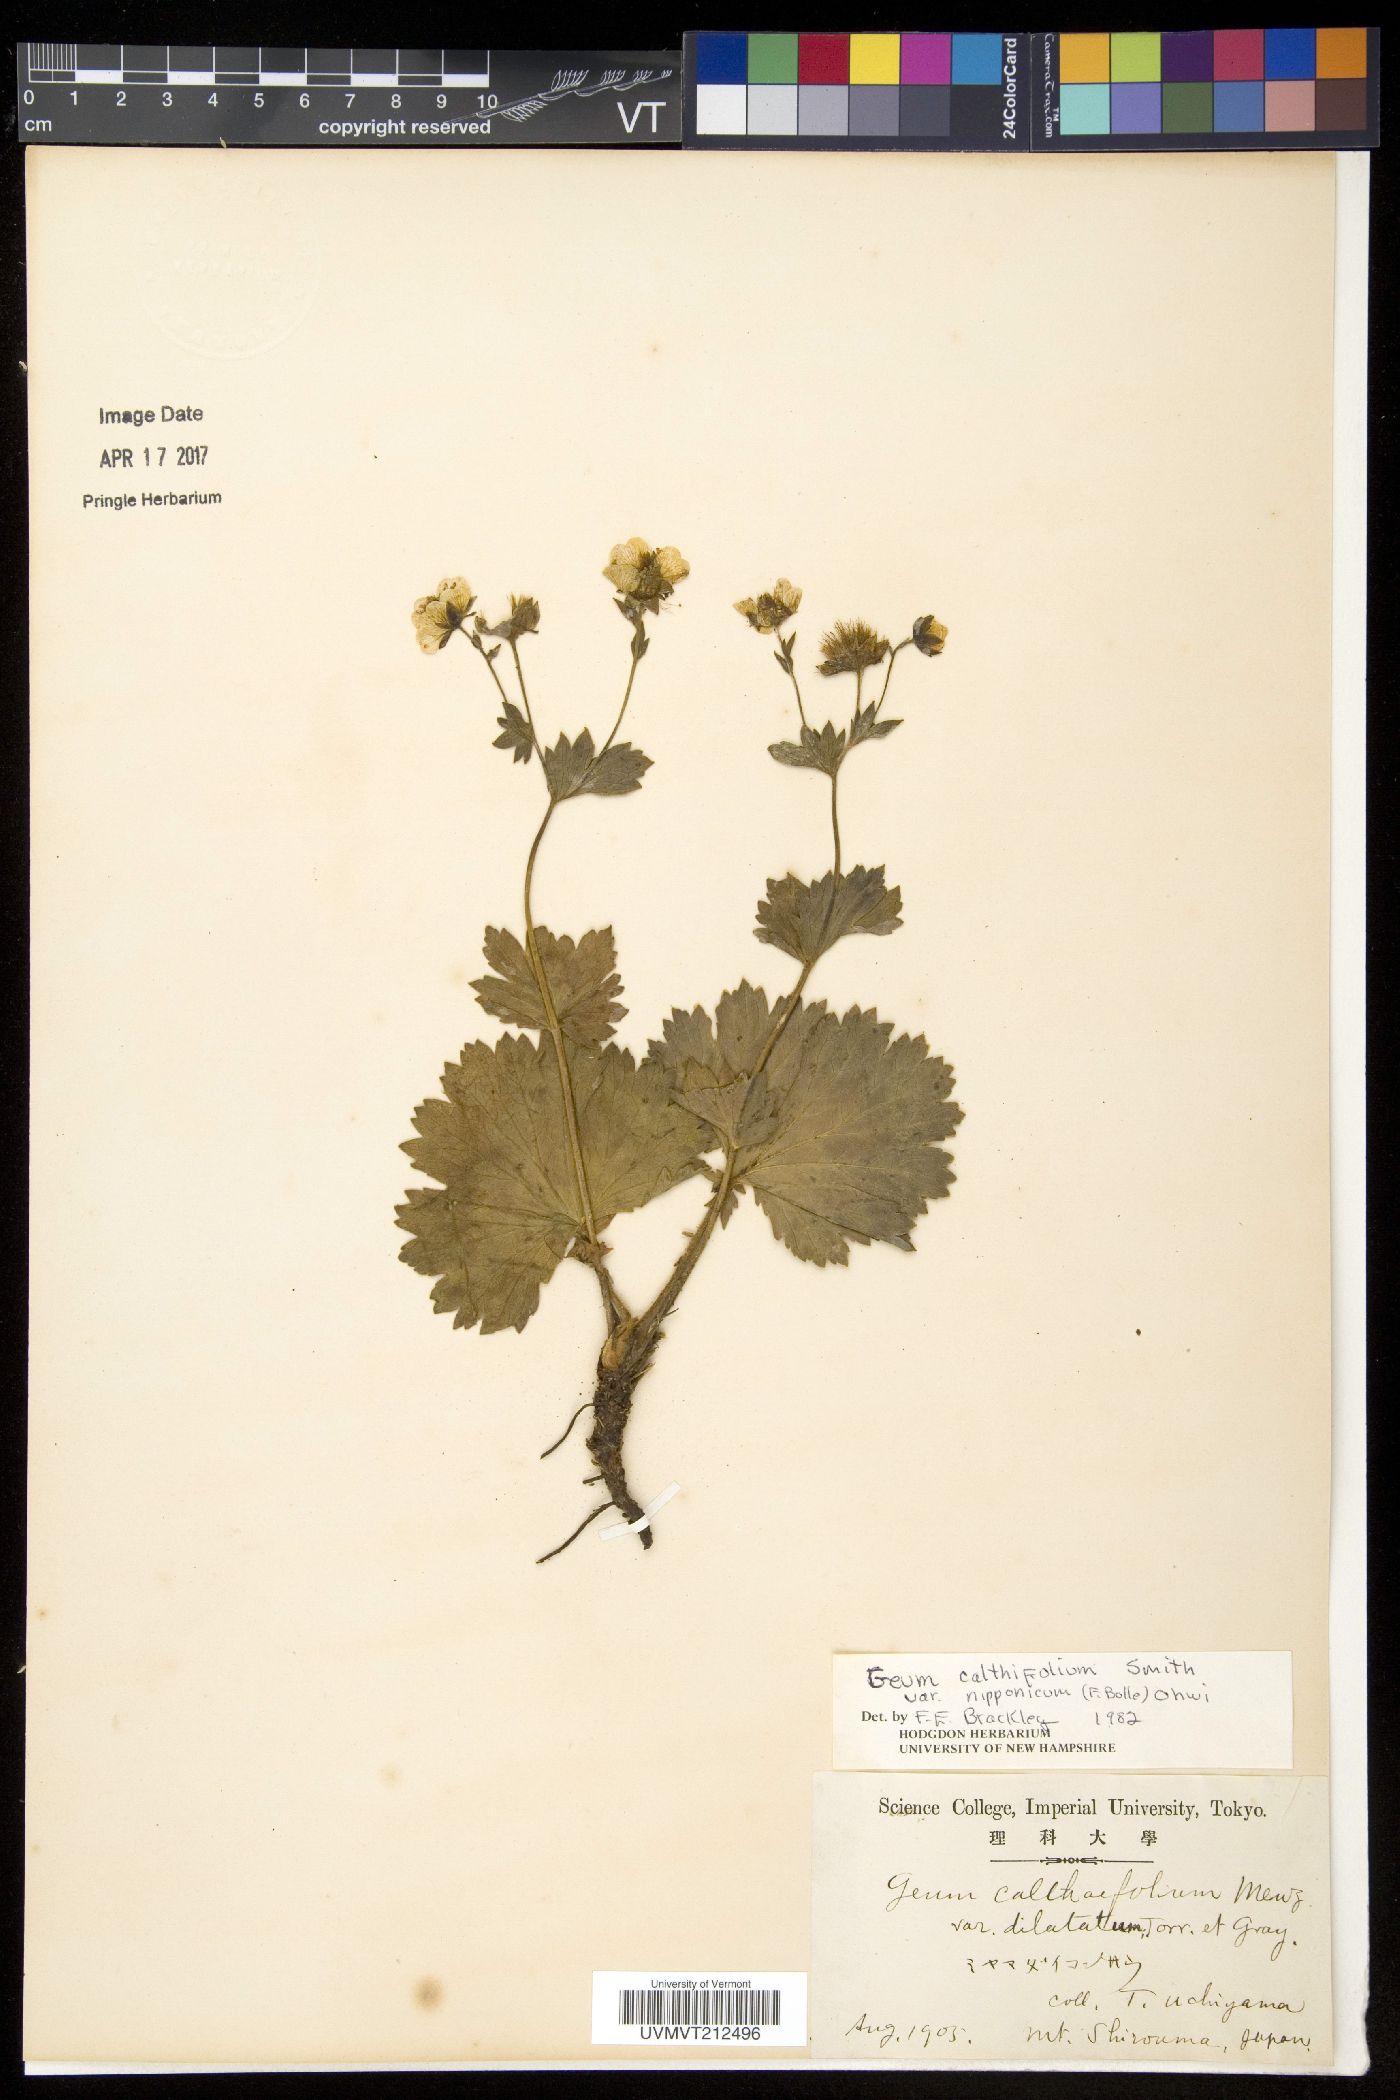 Geum calthifolium subsp. nipponicum image